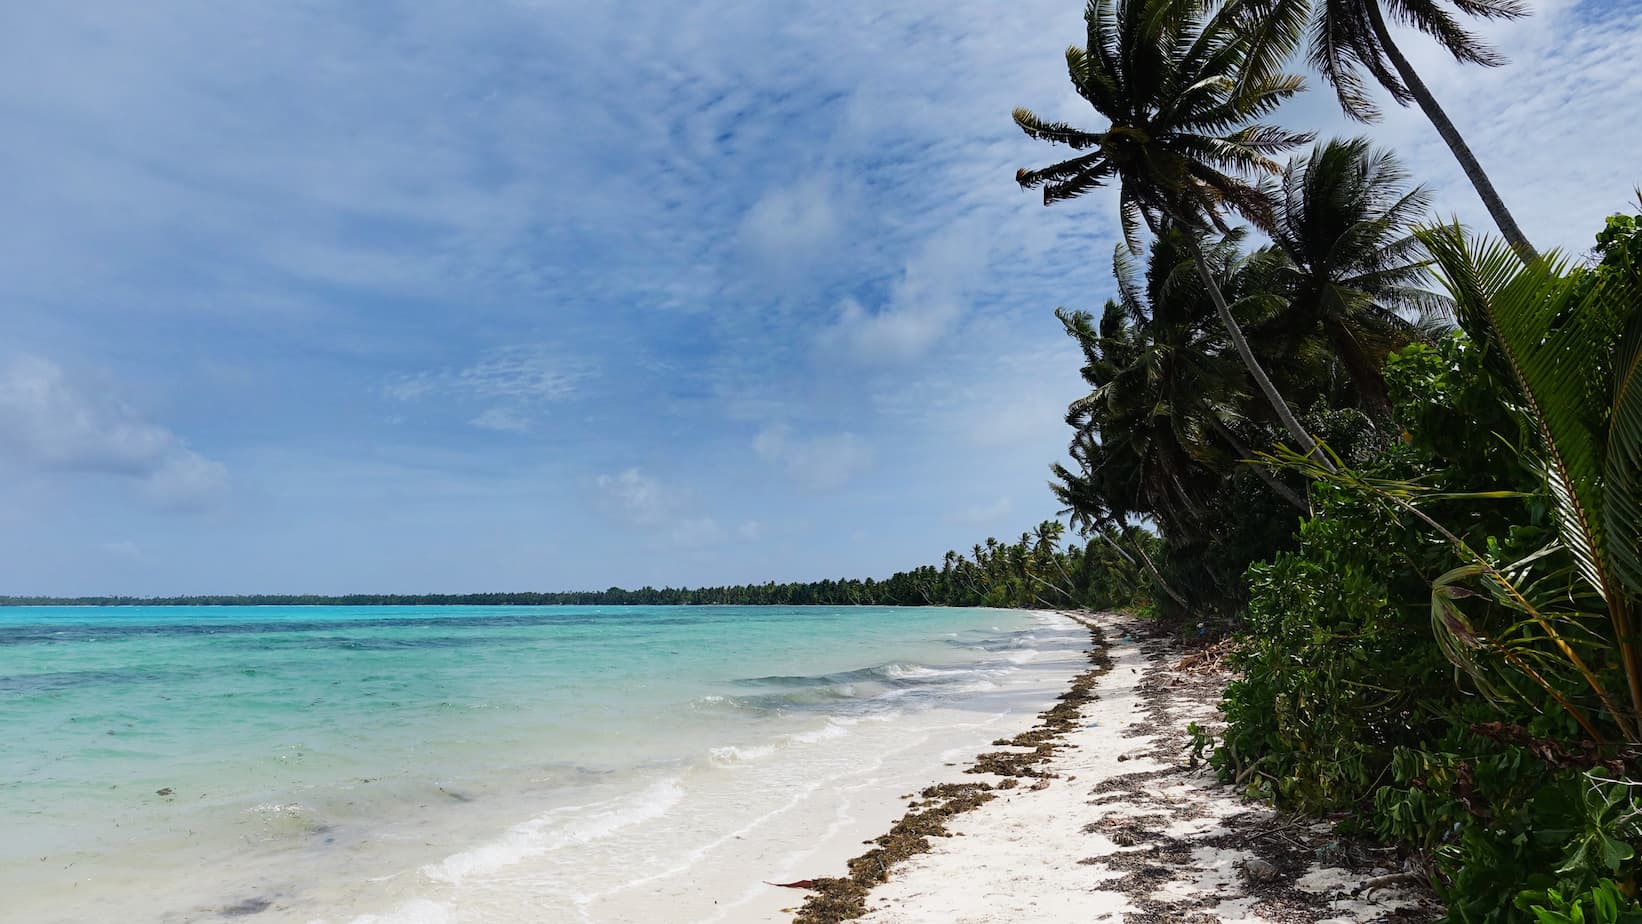 La rencontre entre les palmiers et la plage marque l’arrière-cour de la plupart des résidents de l’Île Abaiang dans les Kiribati